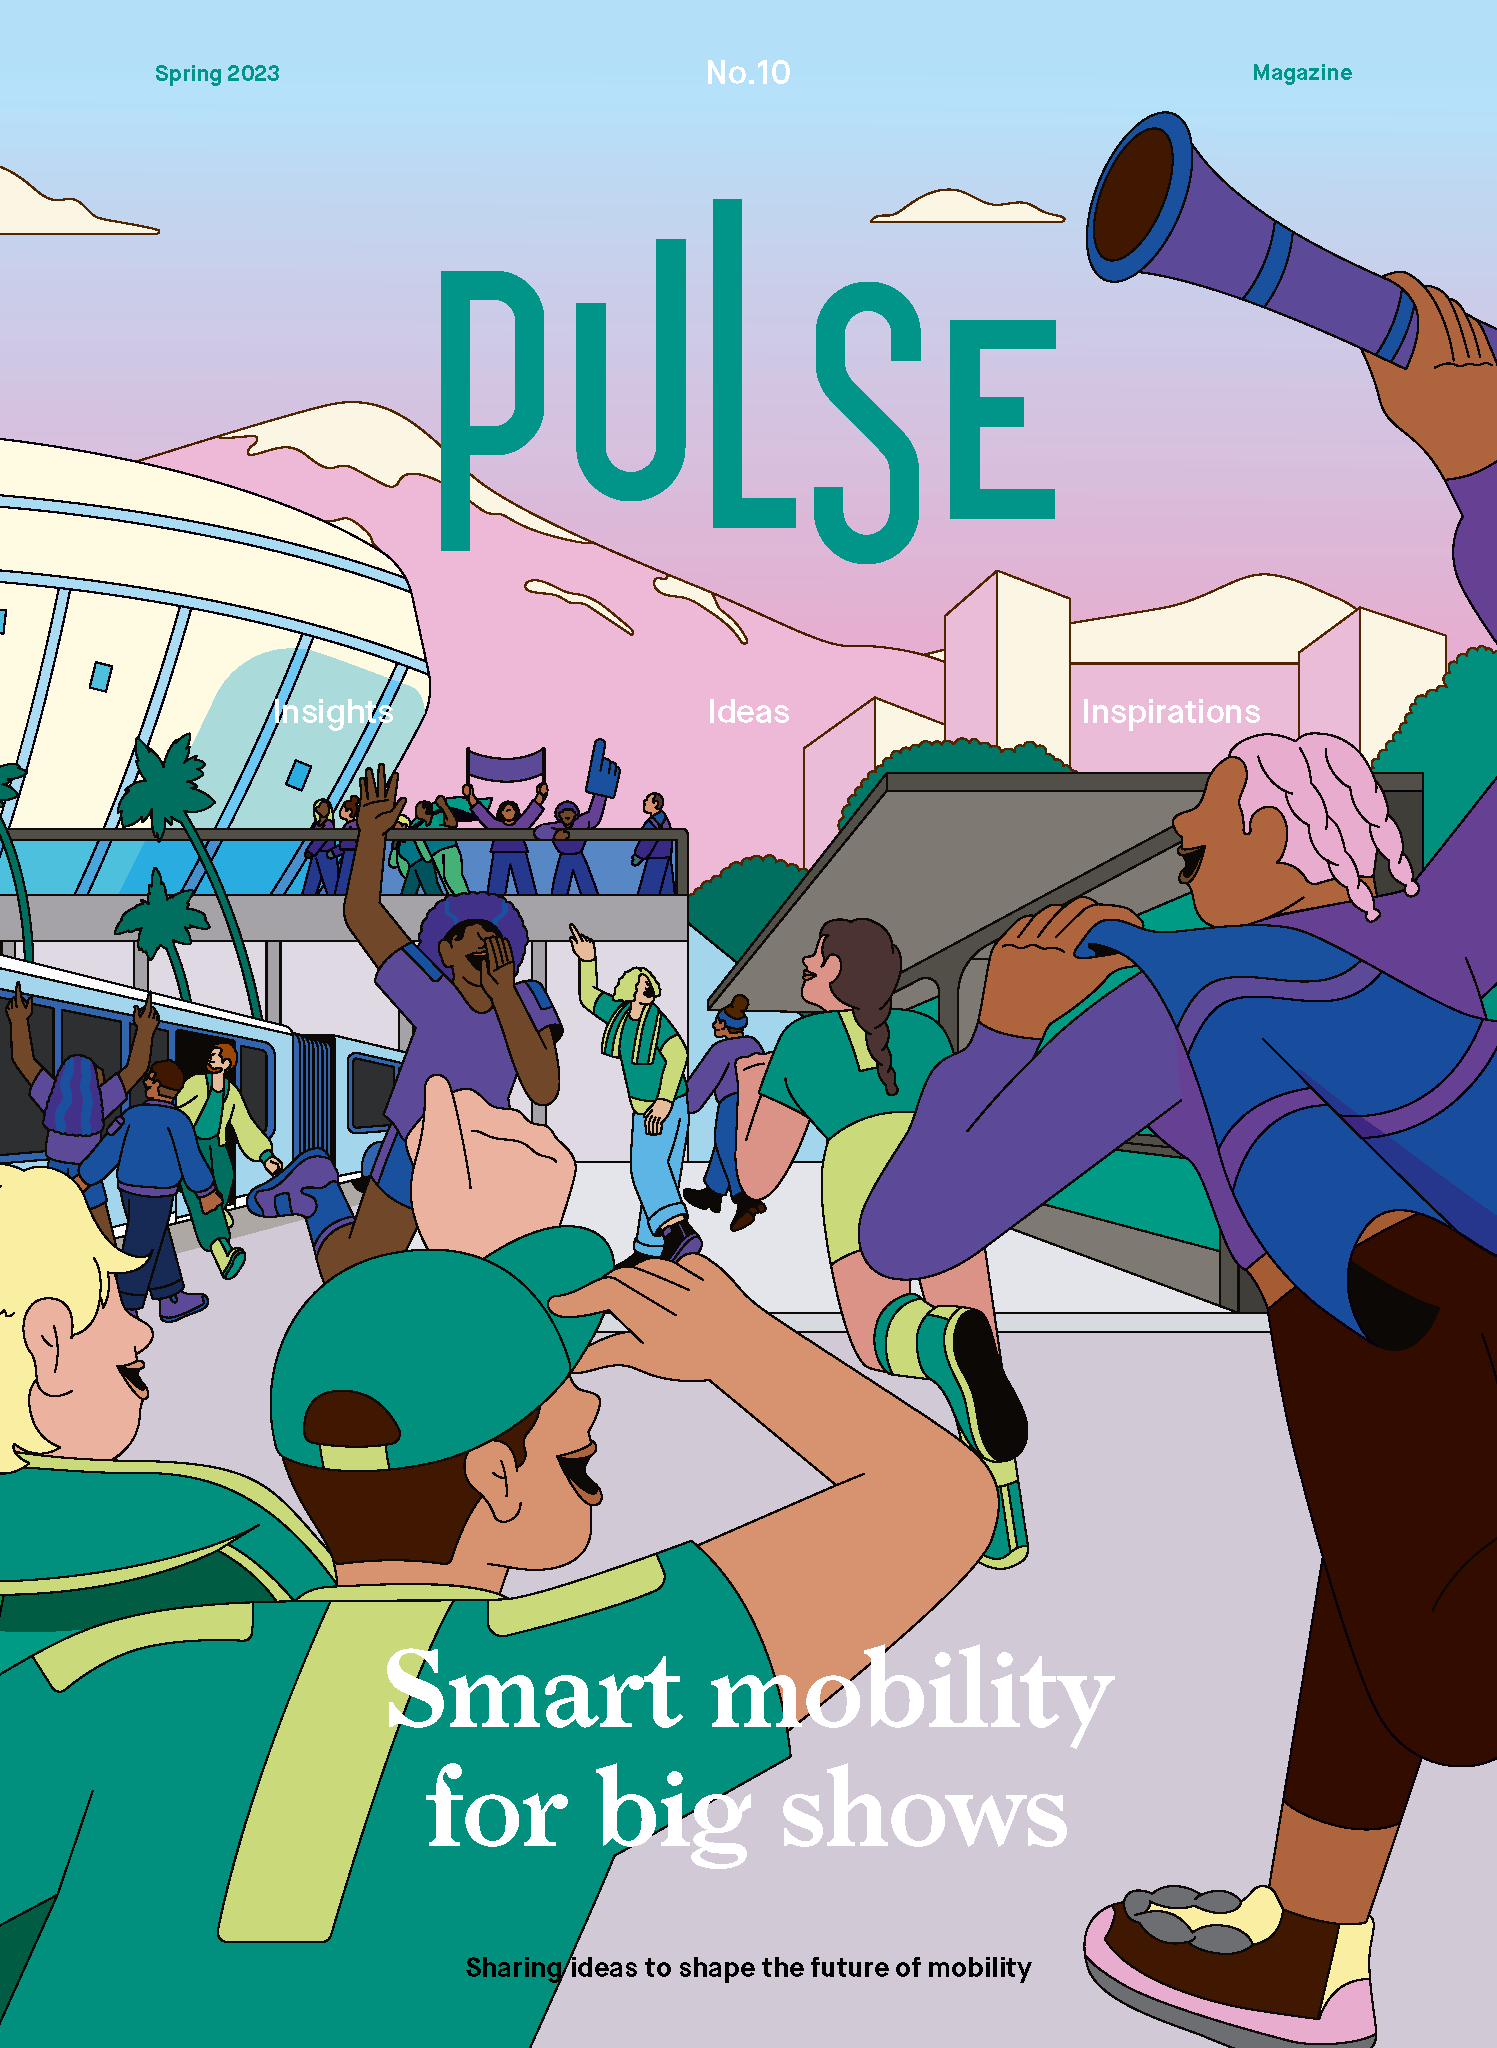 Pulse_Magazine_Ed_10 1